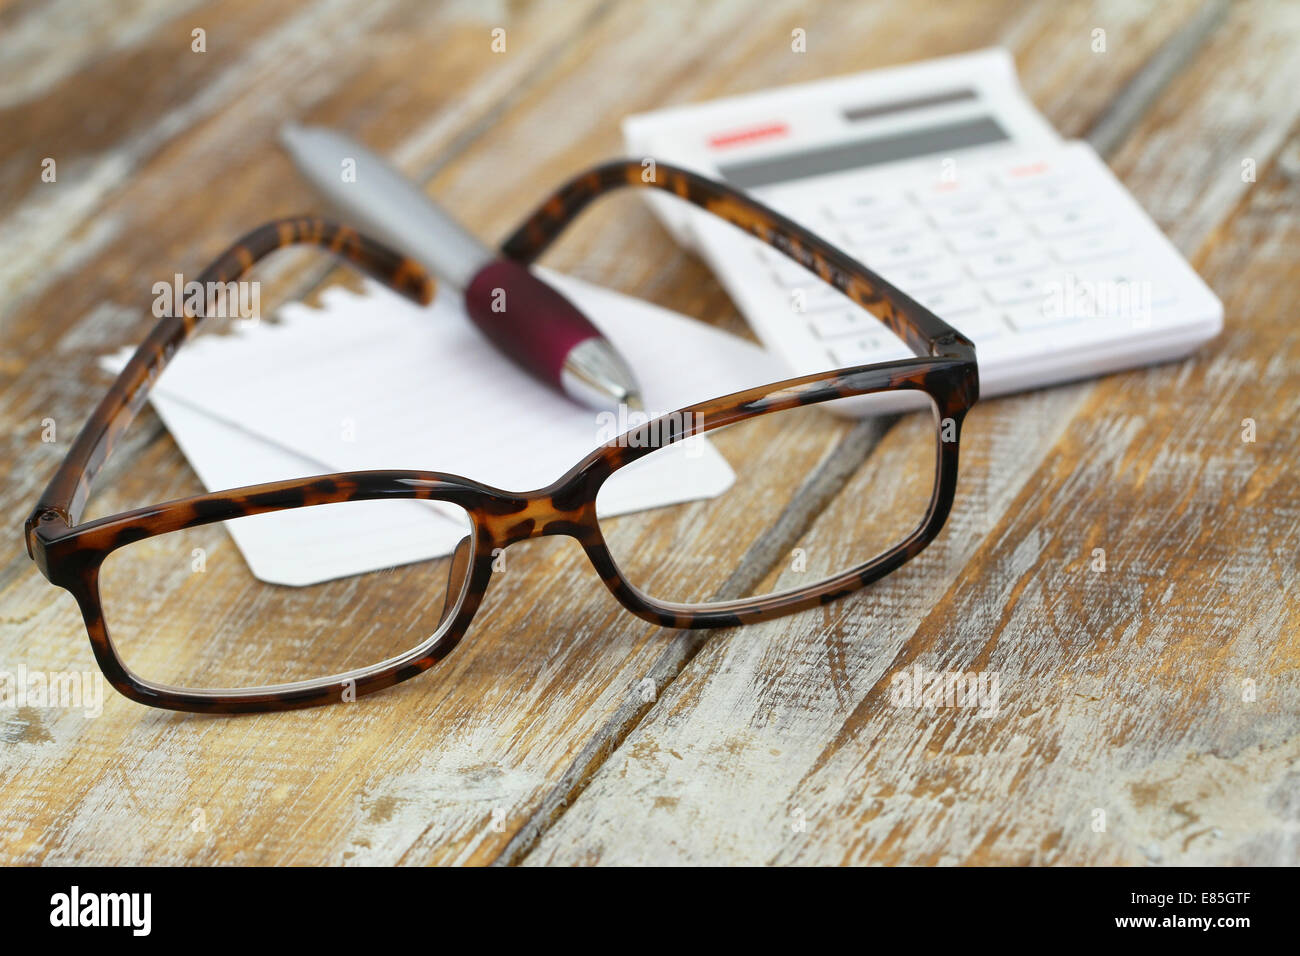 Gli occhiali da lettura, calcolatrice, penna e nota la carta su una superficie di legno Foto Stock